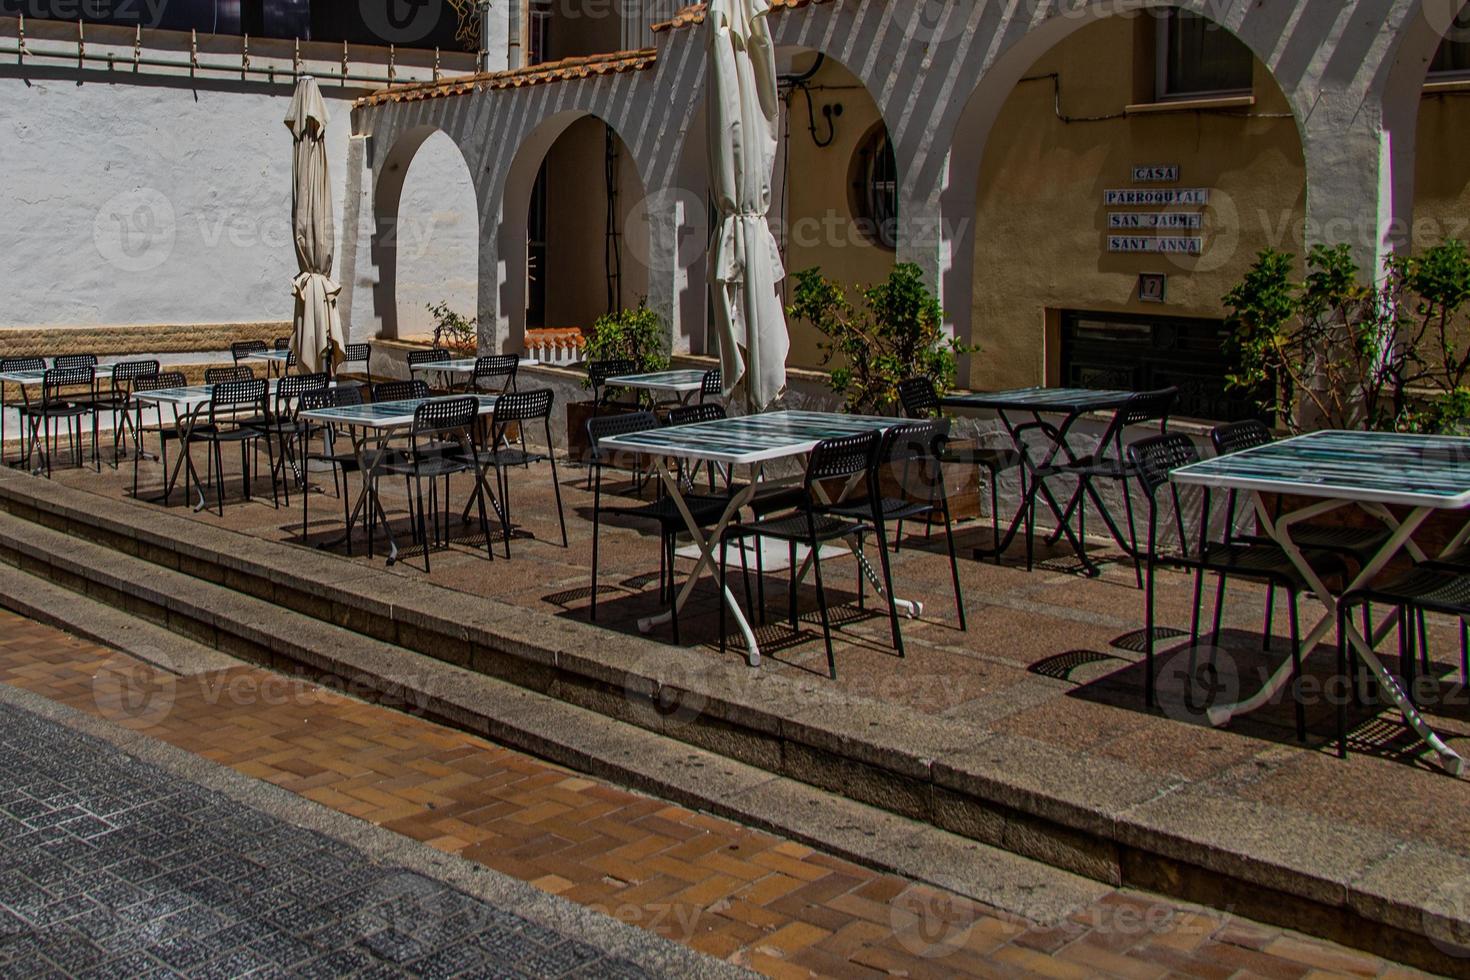 l Urbain paysage de une Espagnol rue dans benidorm avec une café et les tables sur le trottoir sans pour autant gens photo